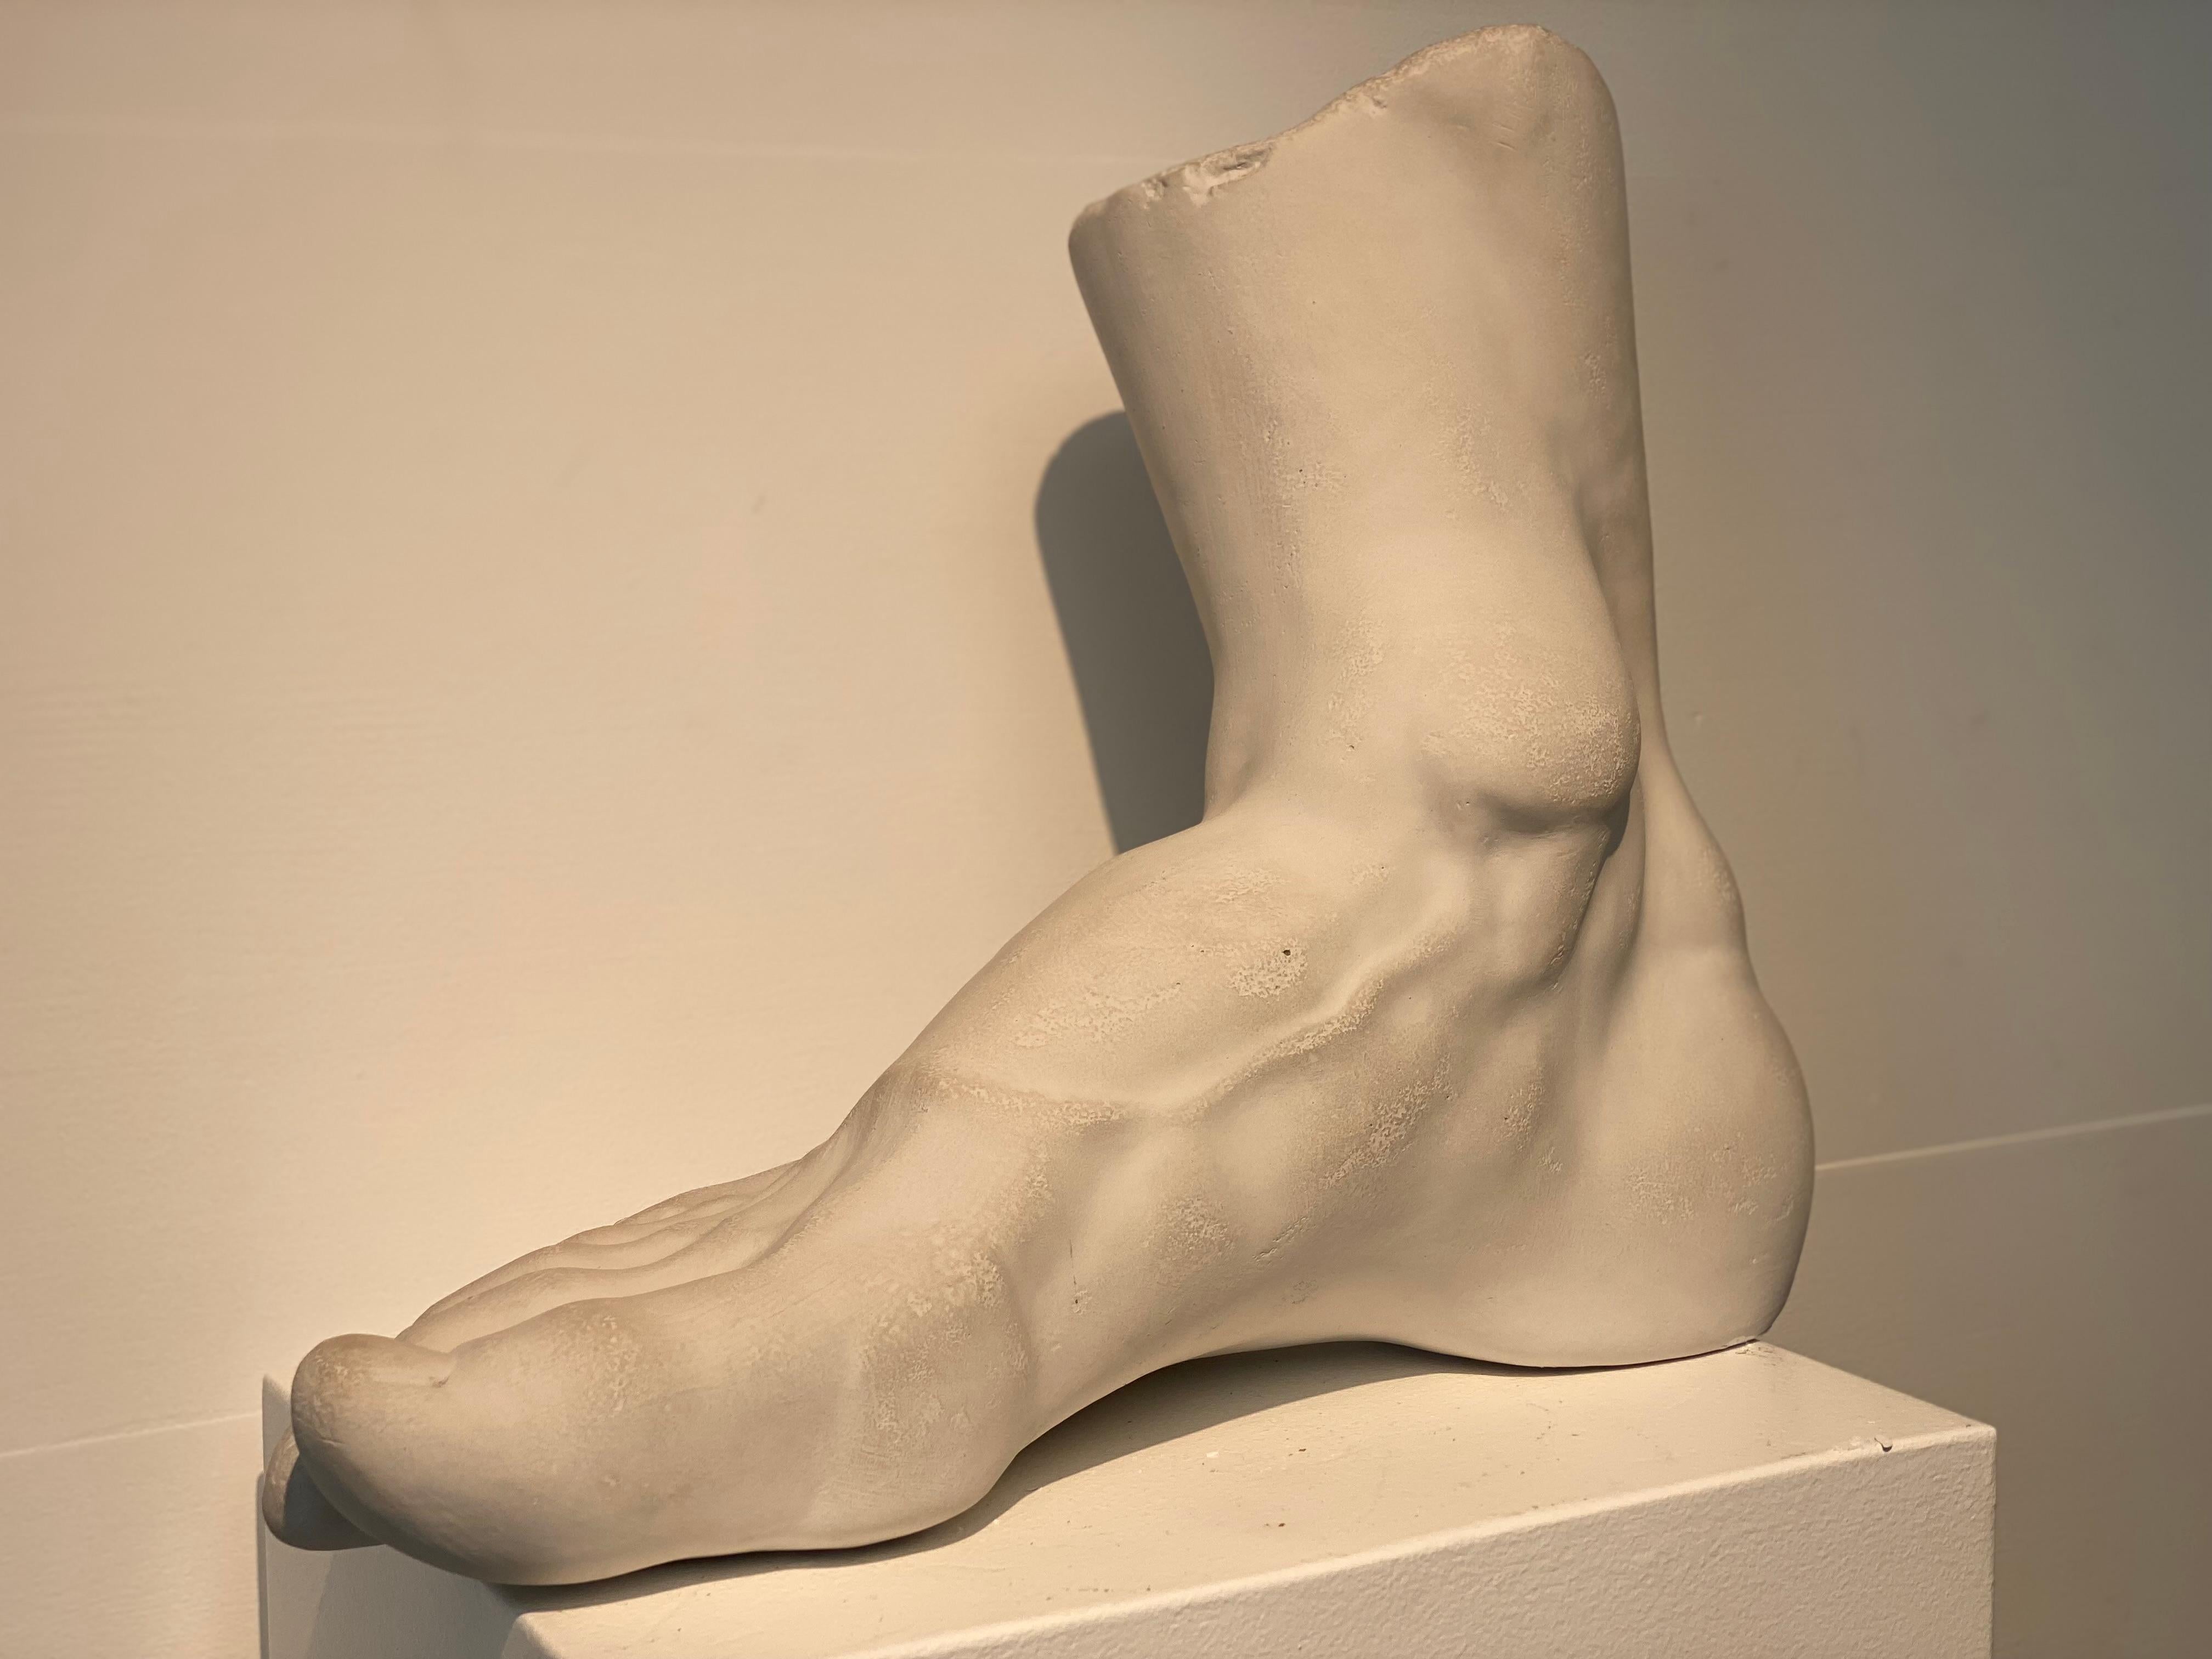 Sehr dekoratives Modell eines menschlichen Fußes in Gips,
Italienische Herkunft,
gute und warme Patina des Gipses,
sehr dekoratives Objekt, das für verschiedene Zwecke verwendet werden kann